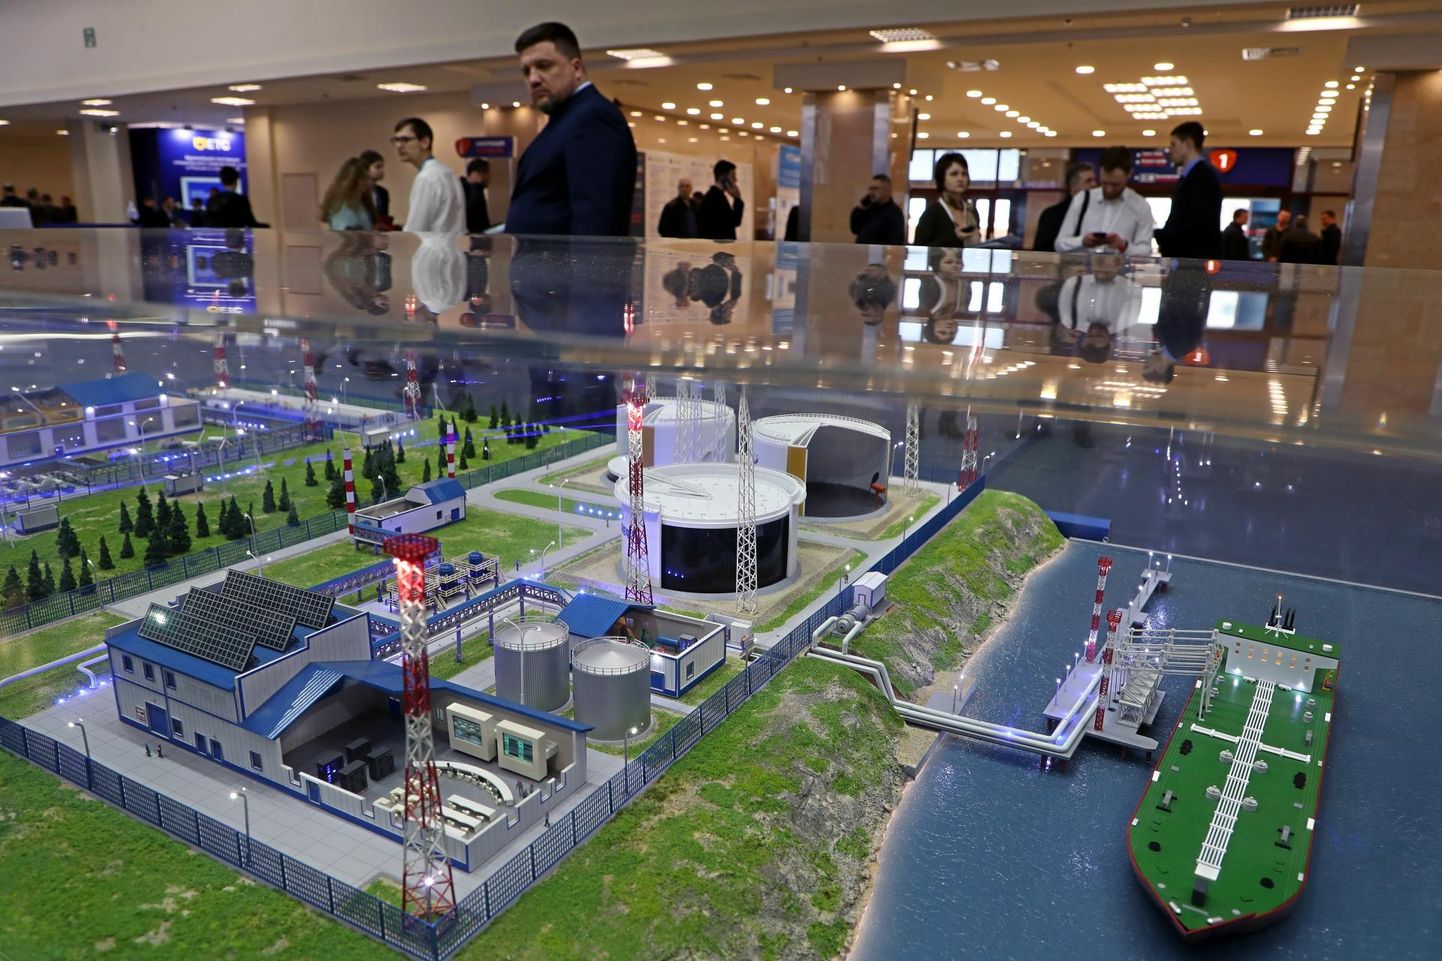 Vene naftatorujuhtmefirma Transneft väljapanek 21. rahvusvahelisel nafta ja maagaasi ala varustuse ja tehnoloogiate messil Neftegaz Moskvas nädal tagasi.